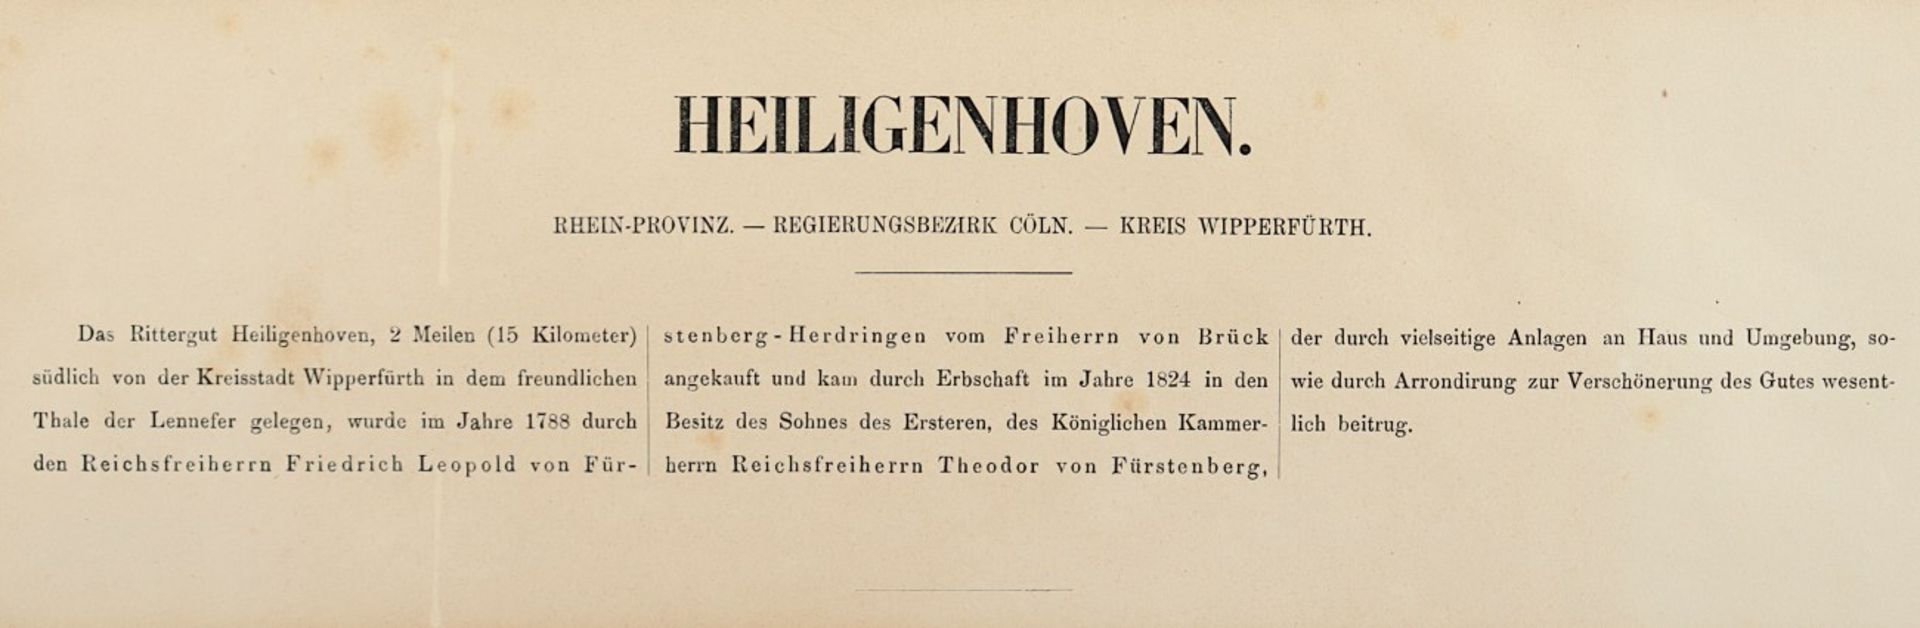 RITTERGUT HEILIGENHOVEN, Lithografie, 17,5 x 21,5, Verlag von Alexander Duncker, Berlin, um 1890, R - Bild 3 aus 3